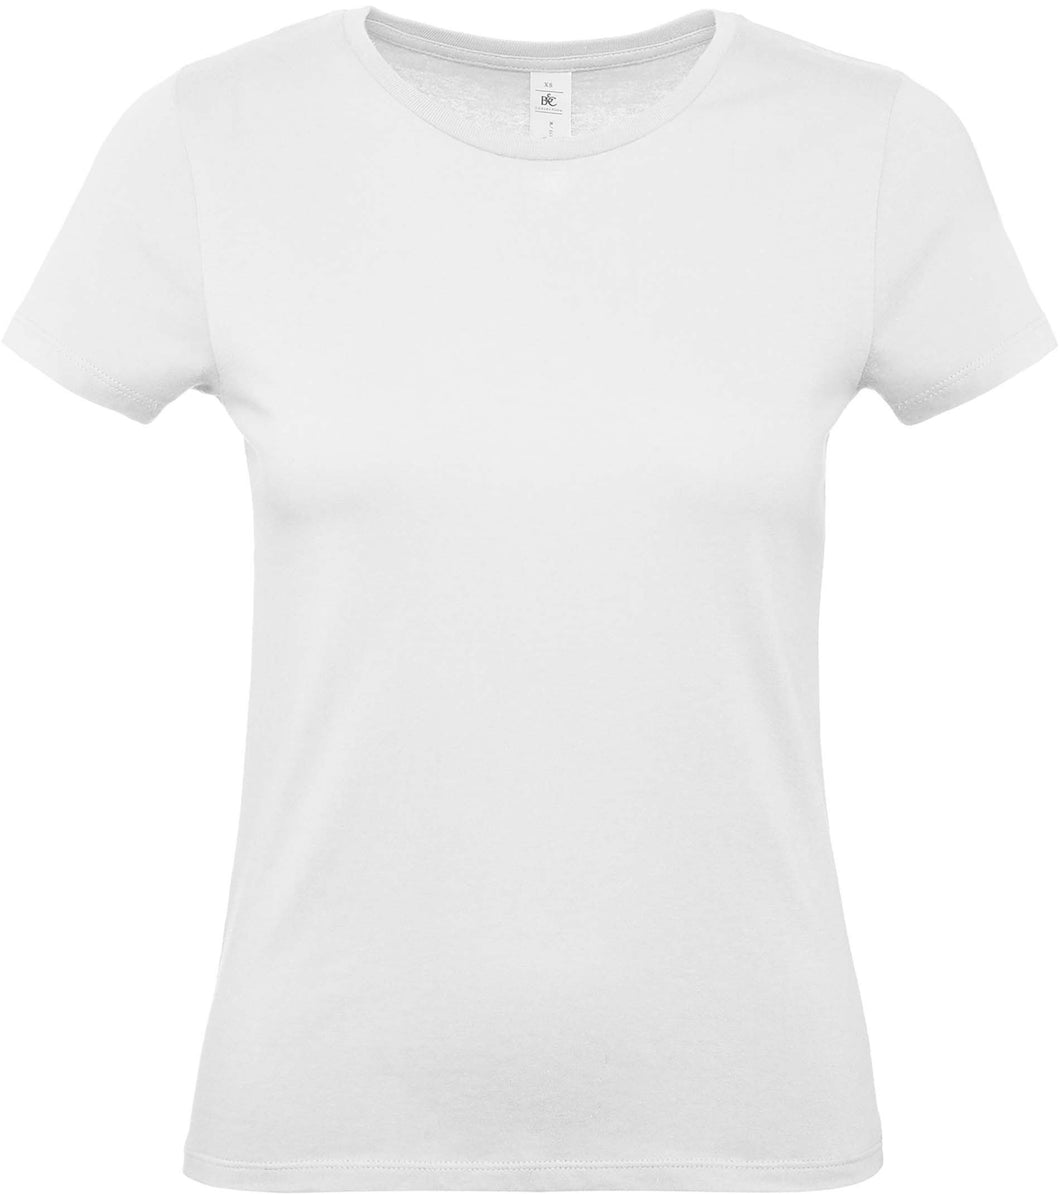 esssai de T-shirt #E150 femme